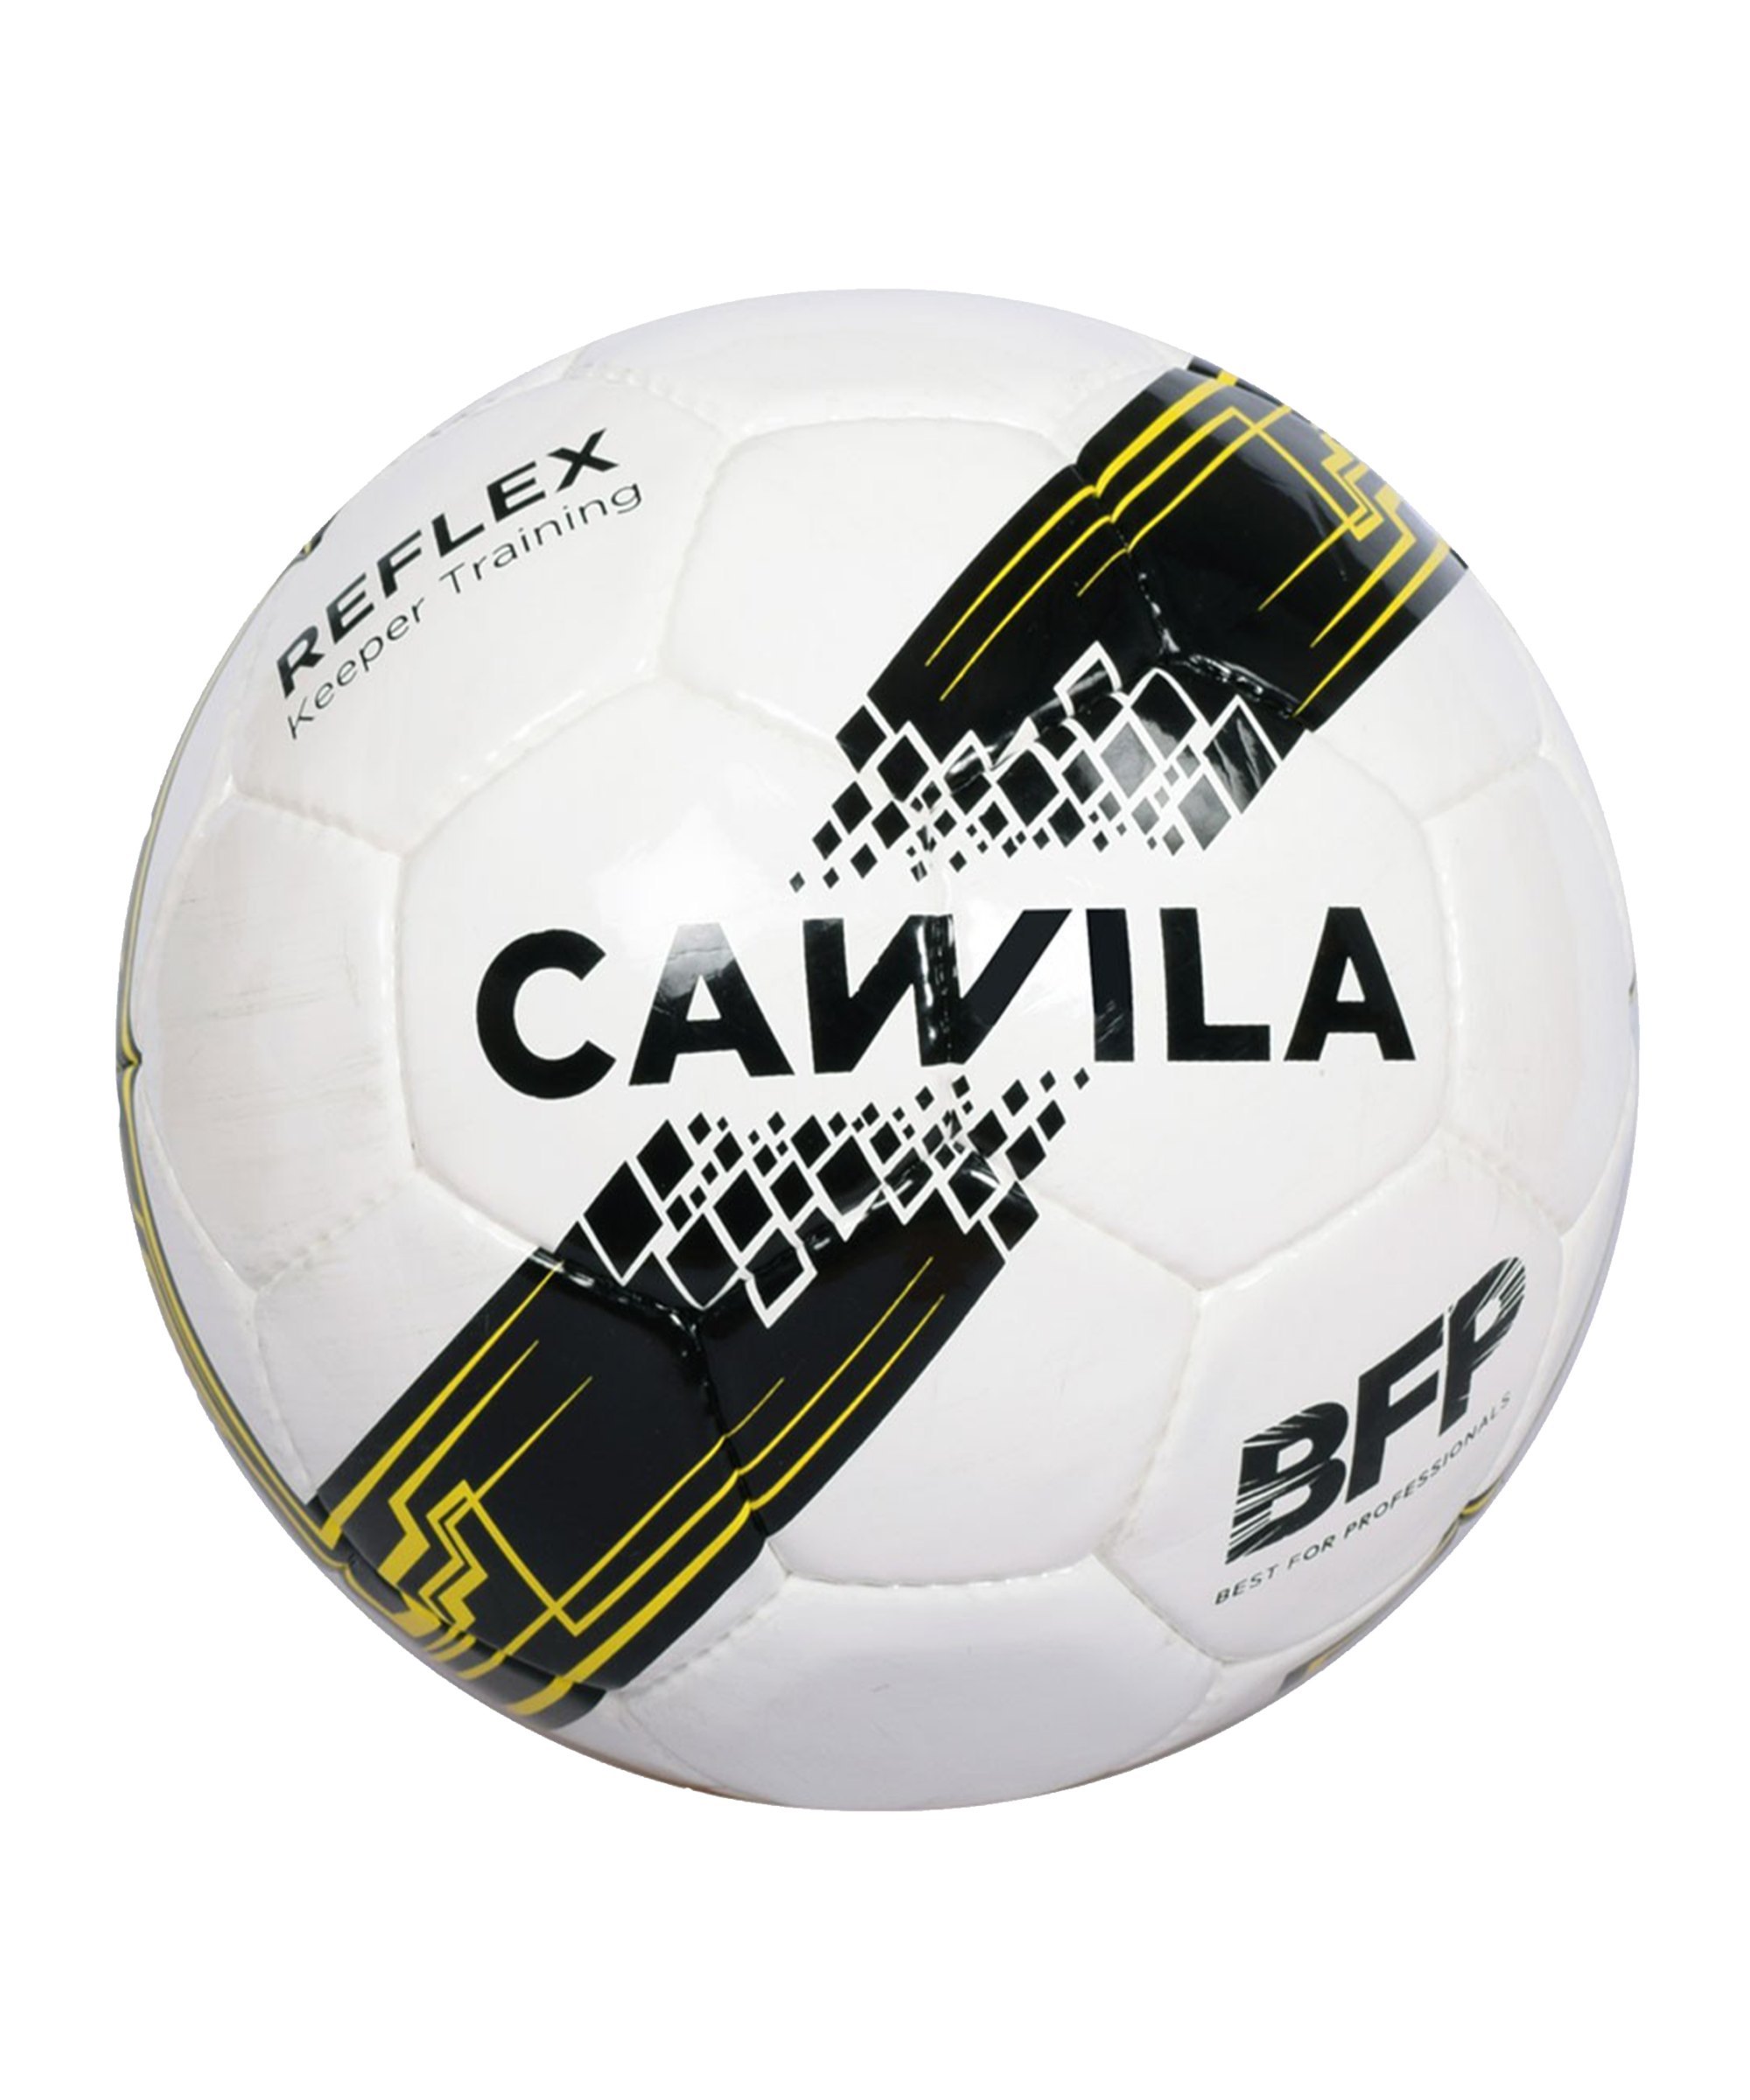 Cawila Fussball Reflex Keeper Training Gr. 5 Weiss - weiss